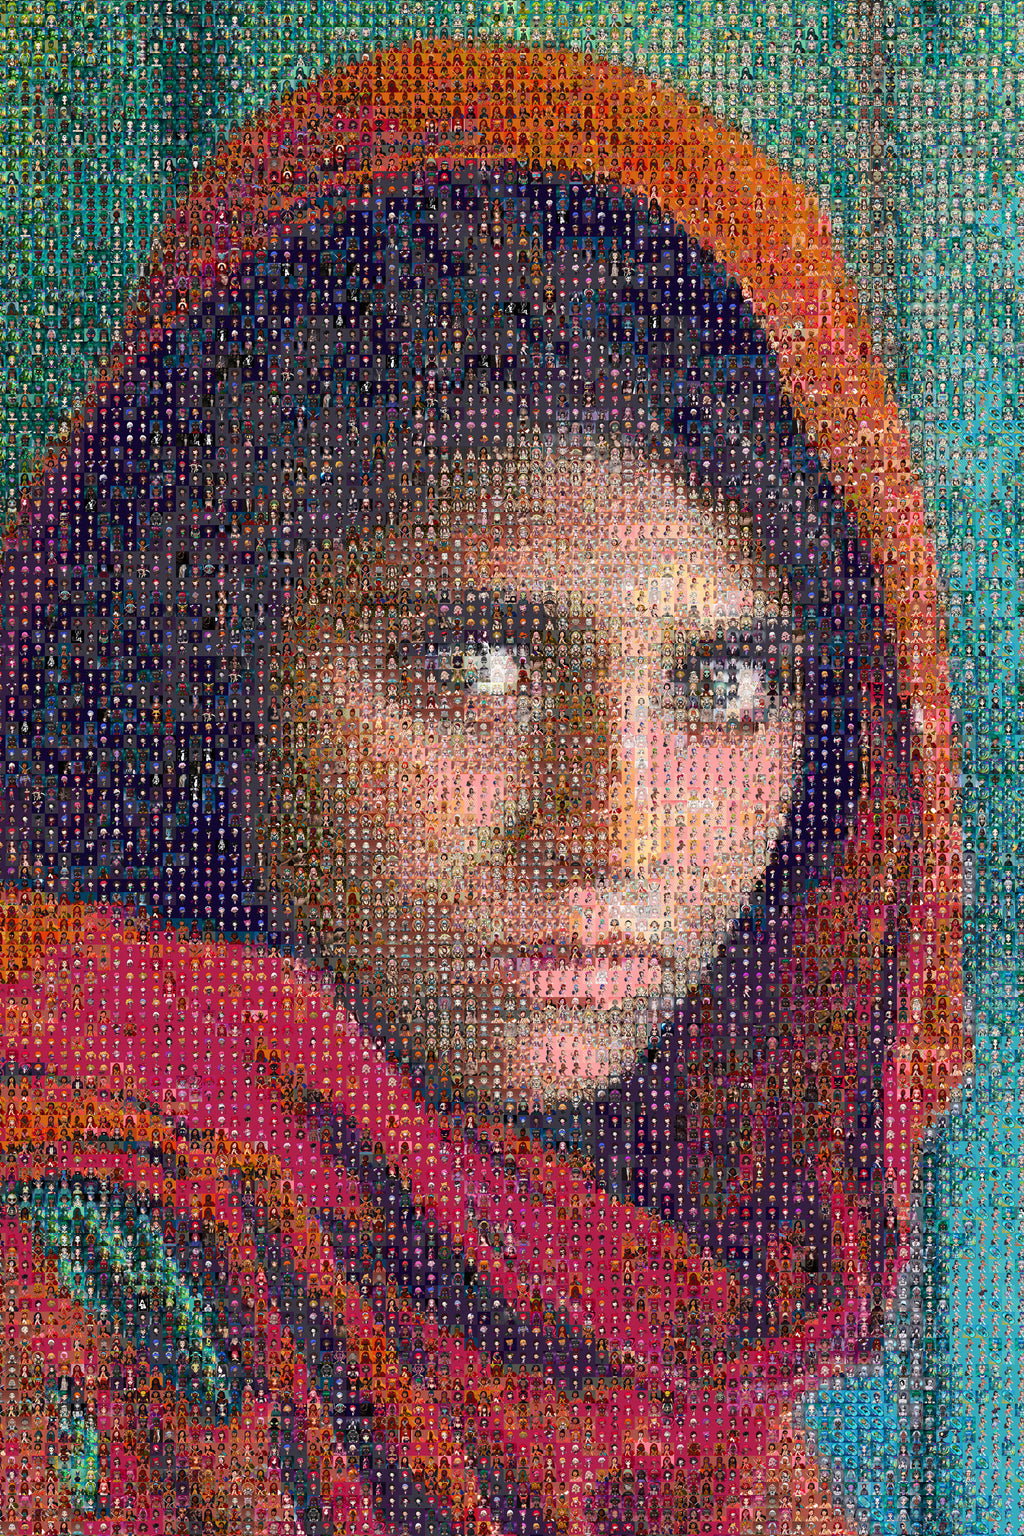 Afghan Girl (est value $8,465,959)